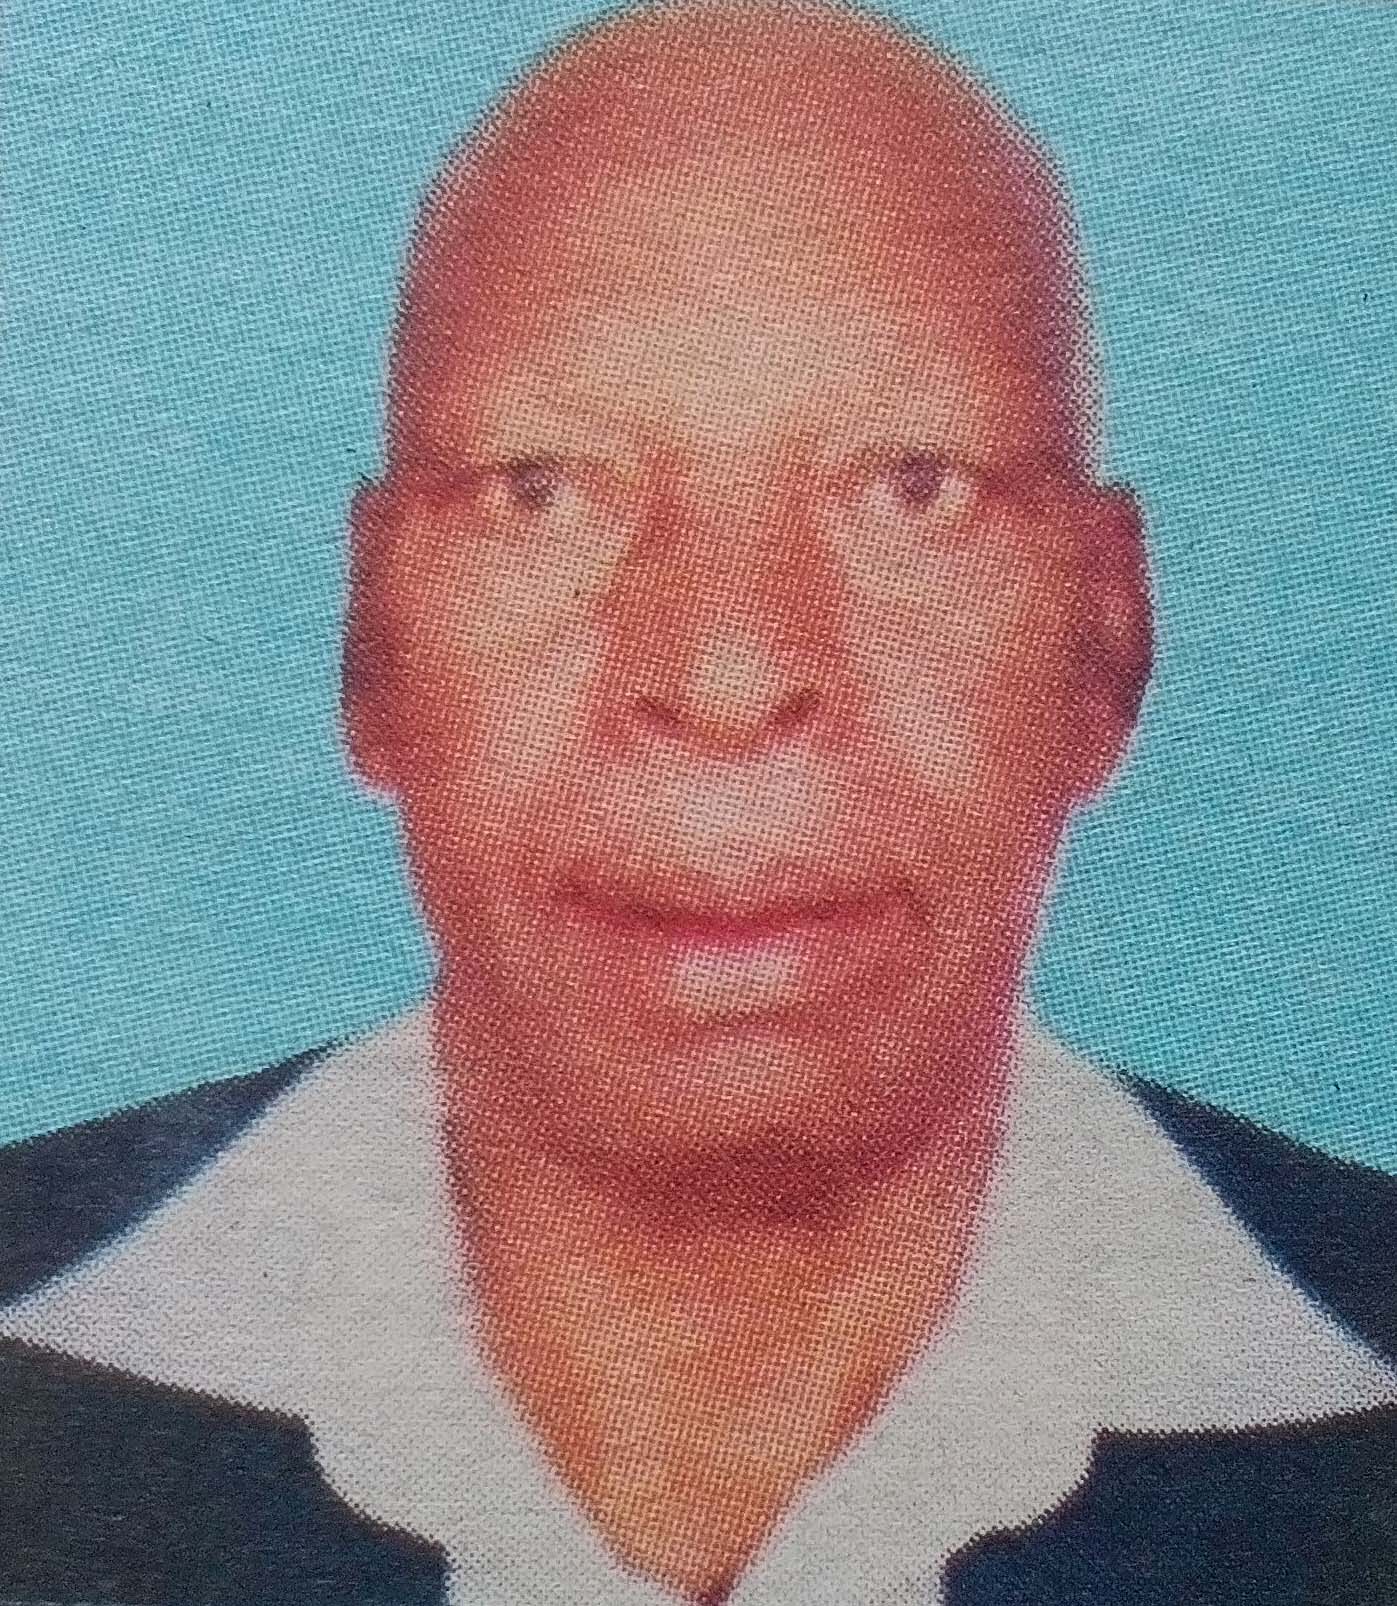 Obituary Image of Patrick J. K. Mwangi